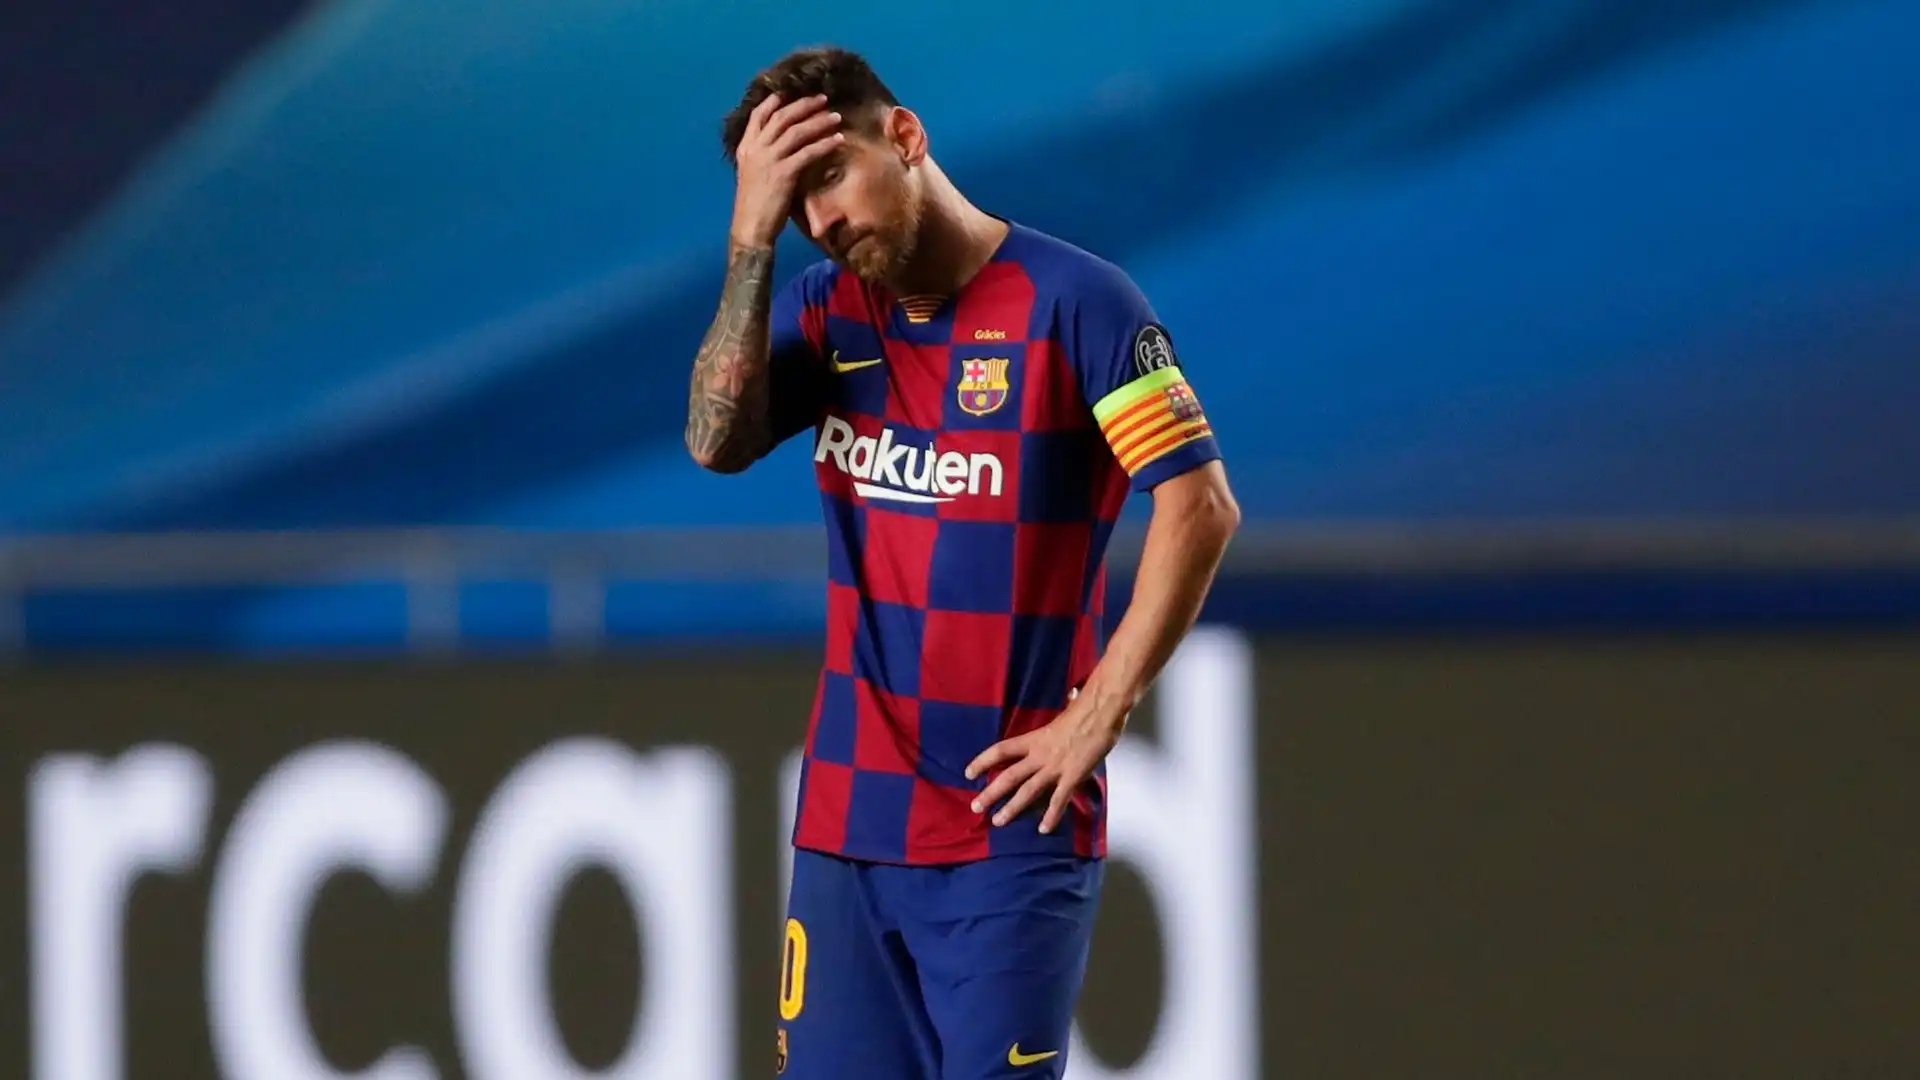 "Lo dico da grandissimo tifoso del Barcellona: se fossi in Leo Messi non tornerei. So che è una decisione difficilissima però ci sono troppi rischi"